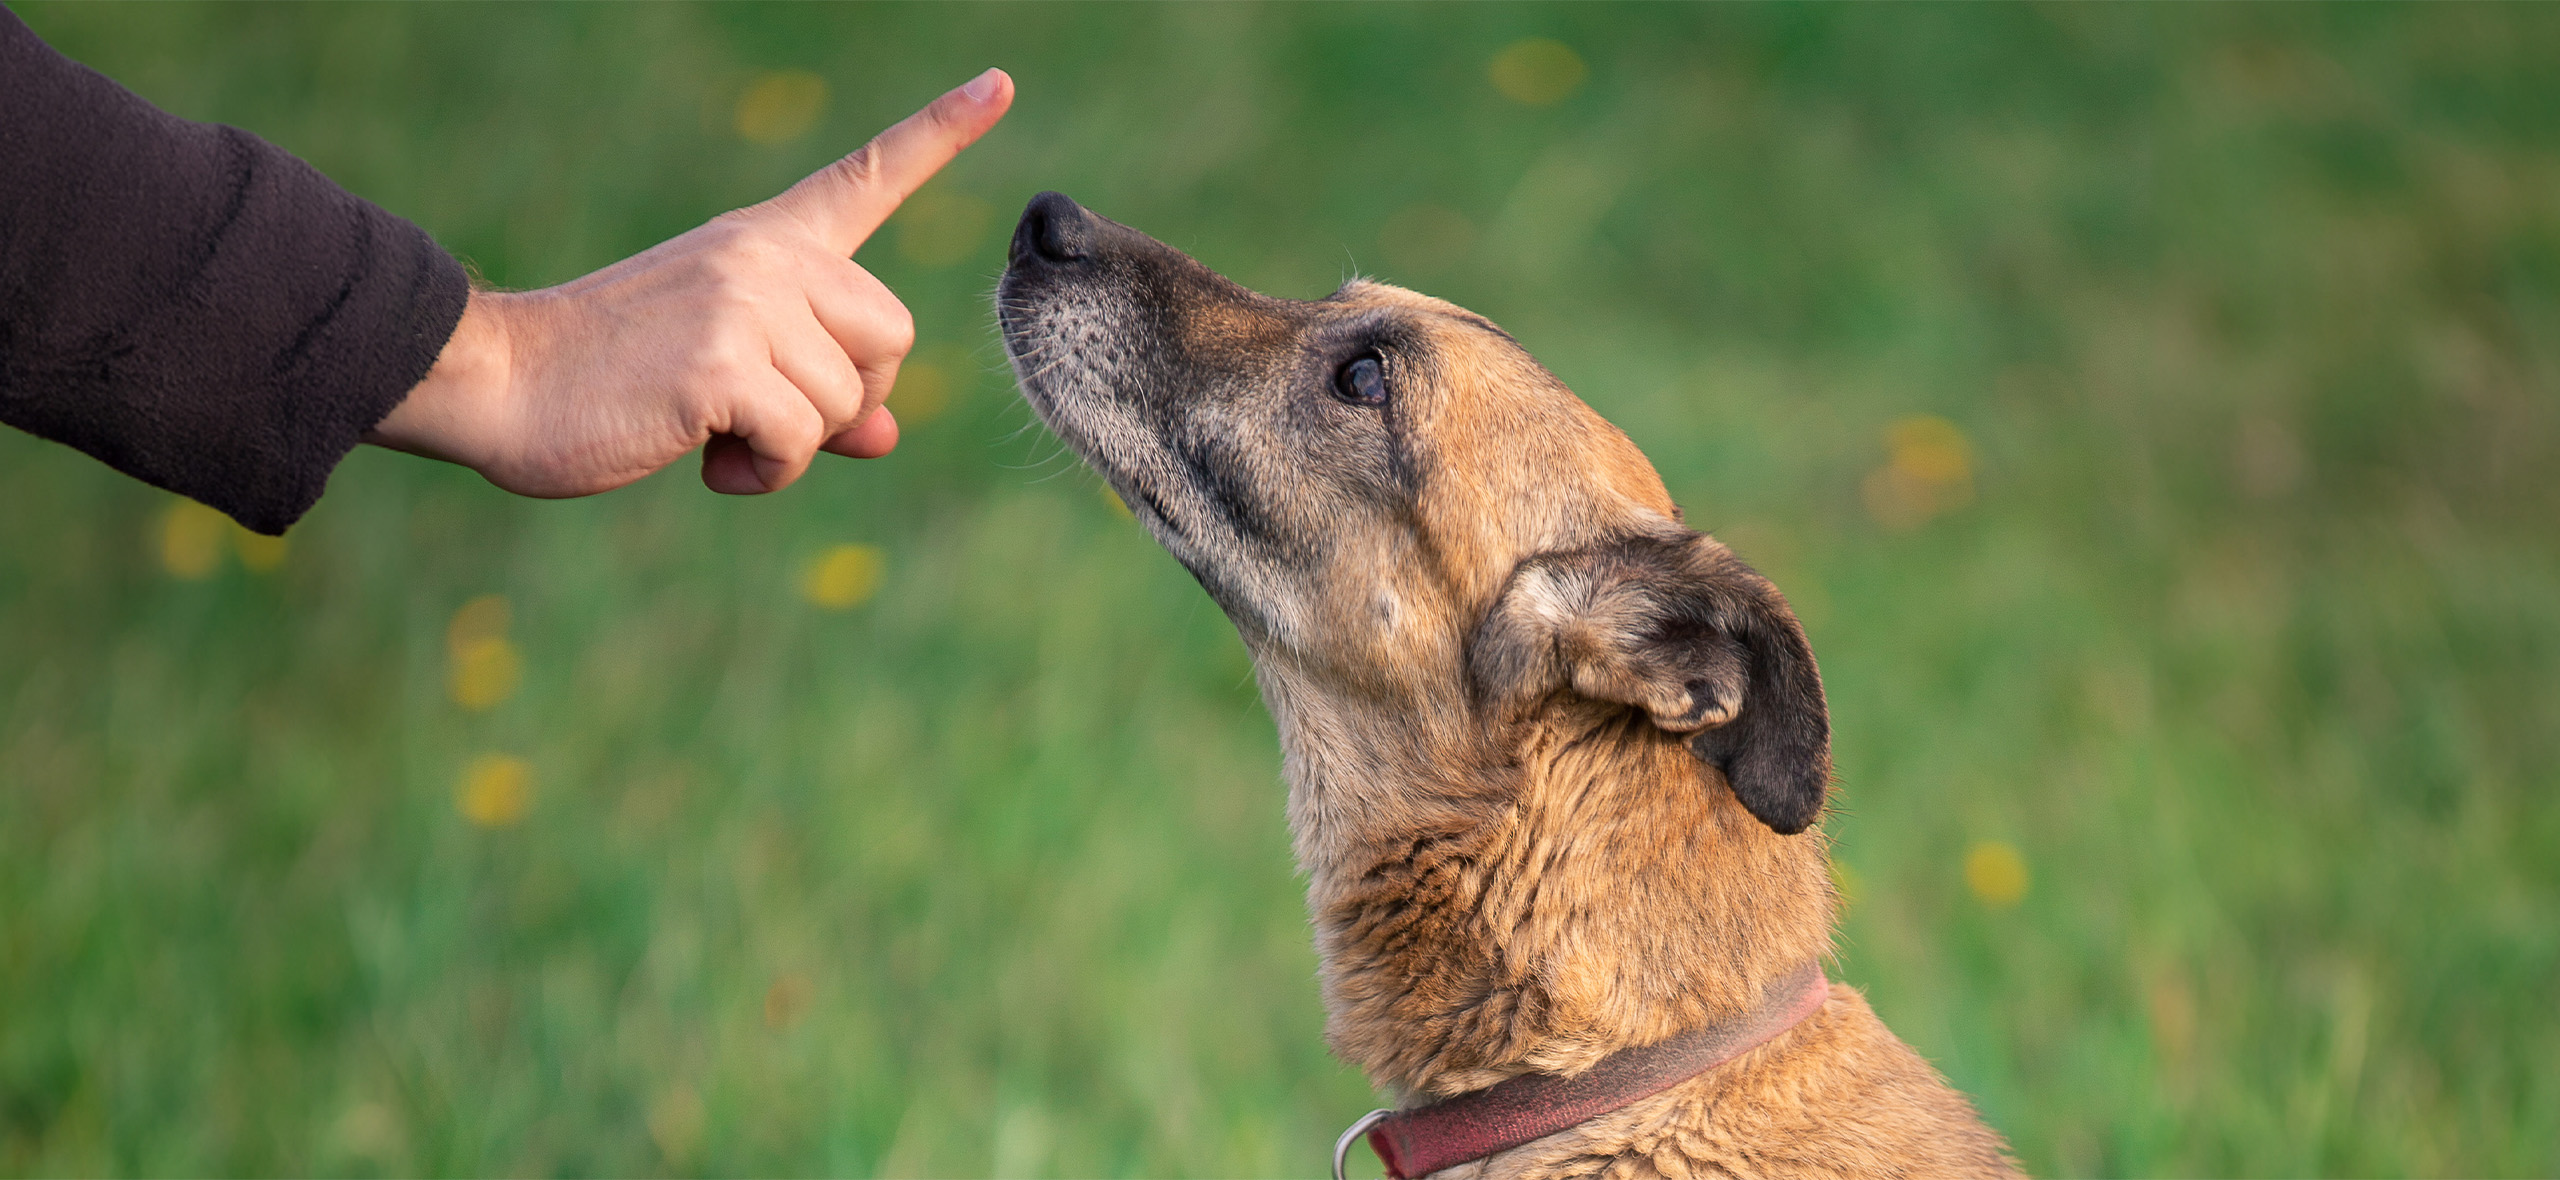 Перекармливать, наказывать, вязать «для здоровья»: 11 частых ошибок владельцев собак